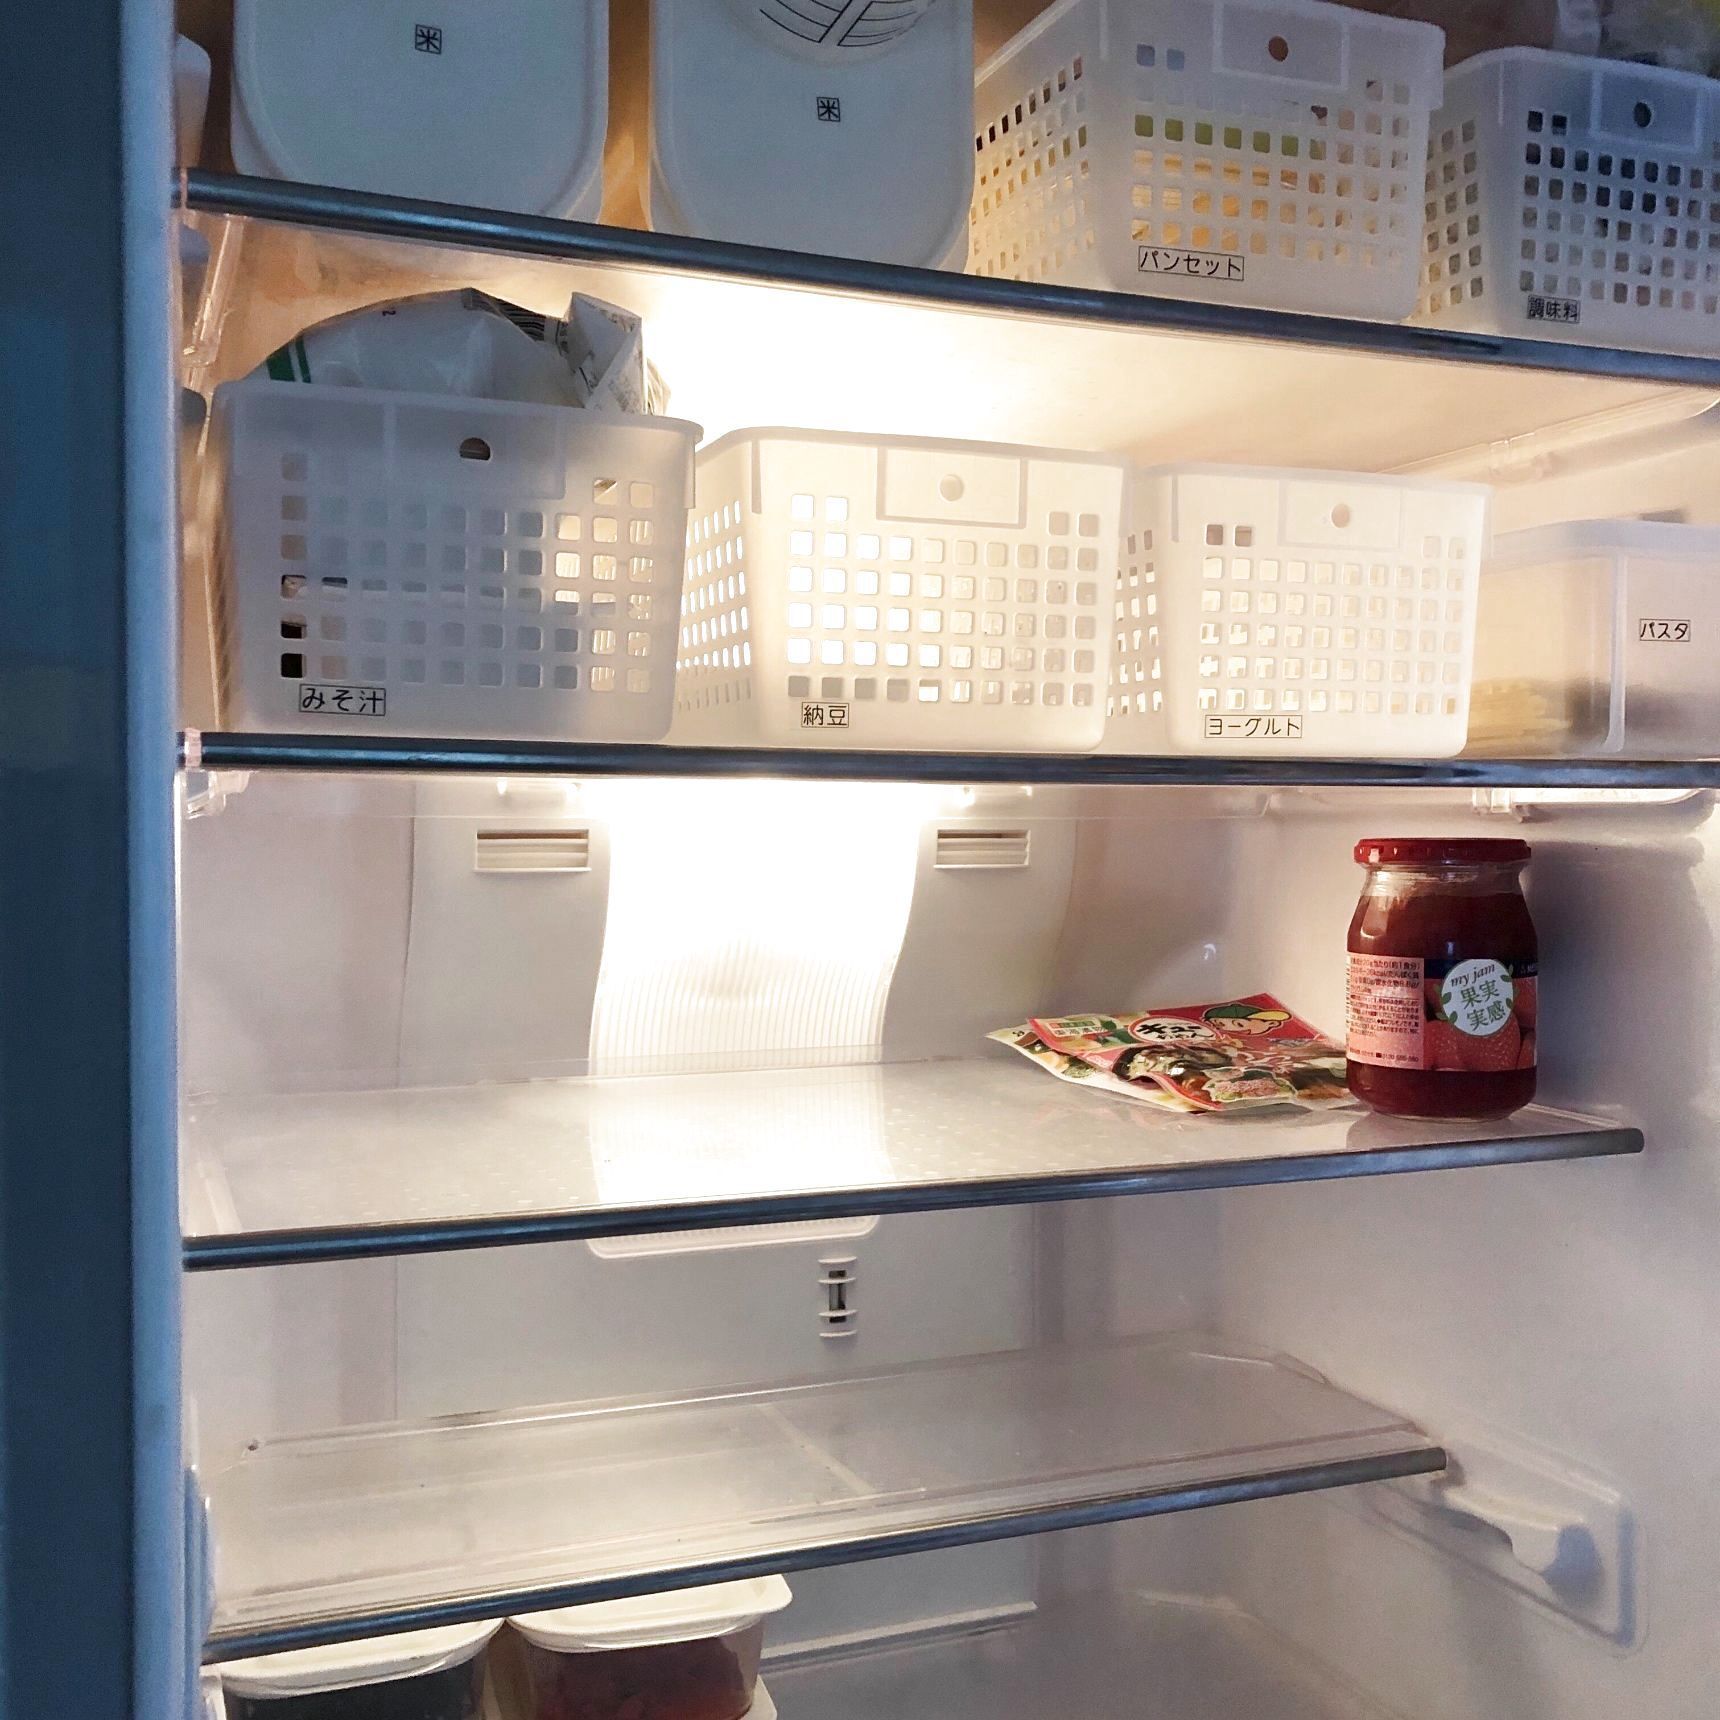 1週間まとめ買いでも、分かりやすい冷蔵庫収納。